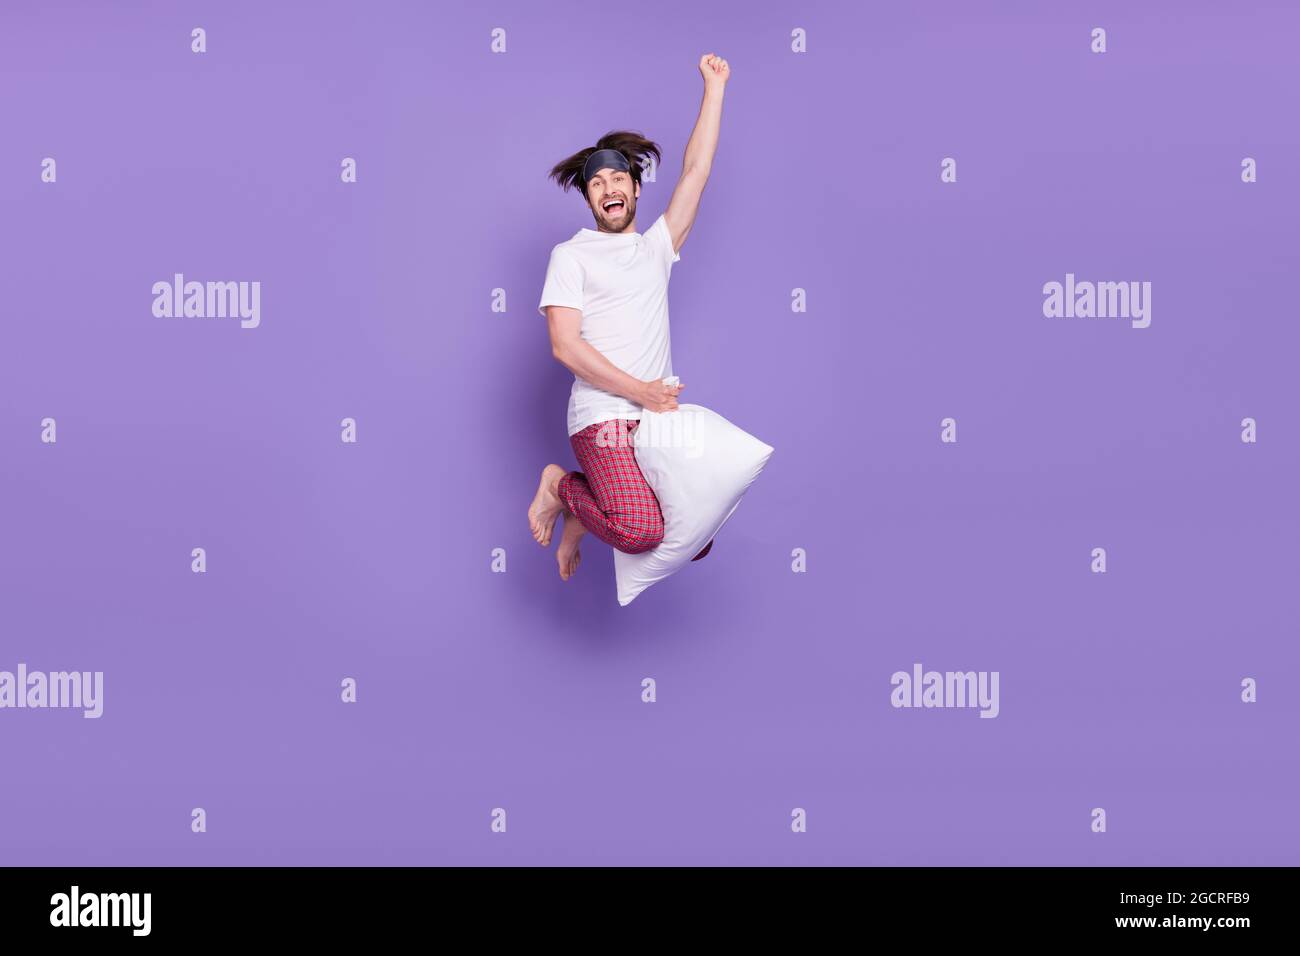 In voller Größe Porträt von sorglosen überglücklich Person fliegen auf Kissen heben Faust isoliert auf violettem Hintergrund Stockfoto